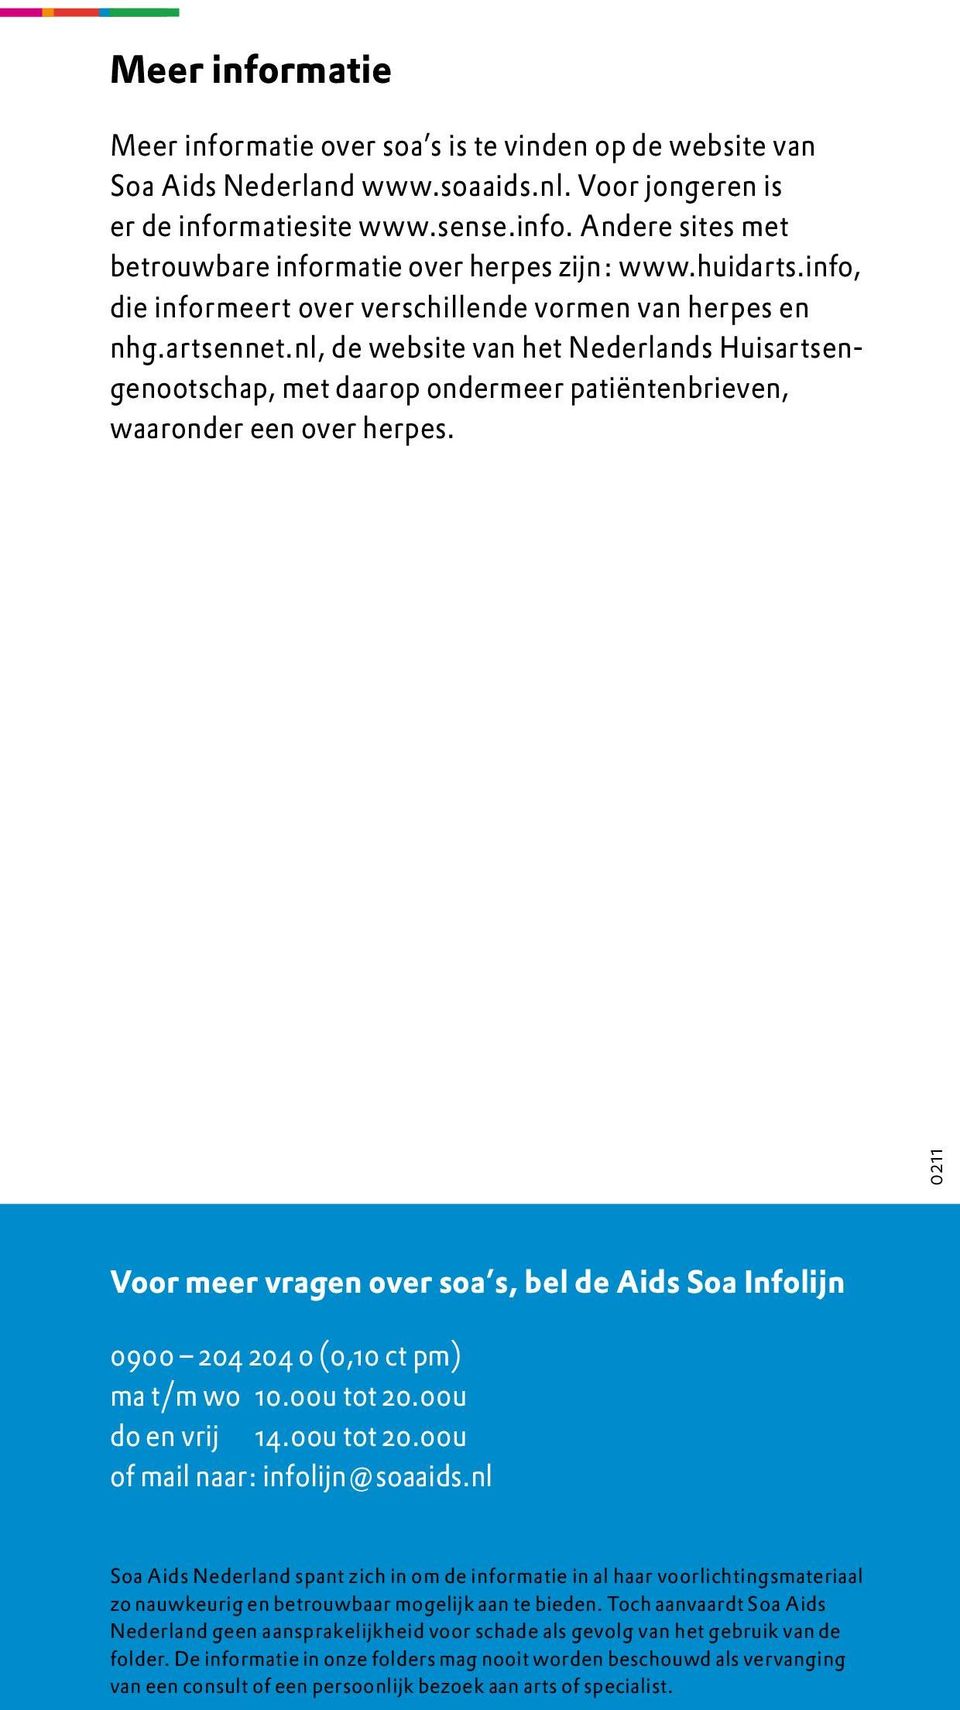 nl, de website van het Nederlands Huisartsengenootschap, met daarop ondermeer patiëntenbrieven, waaronder een over herpes.